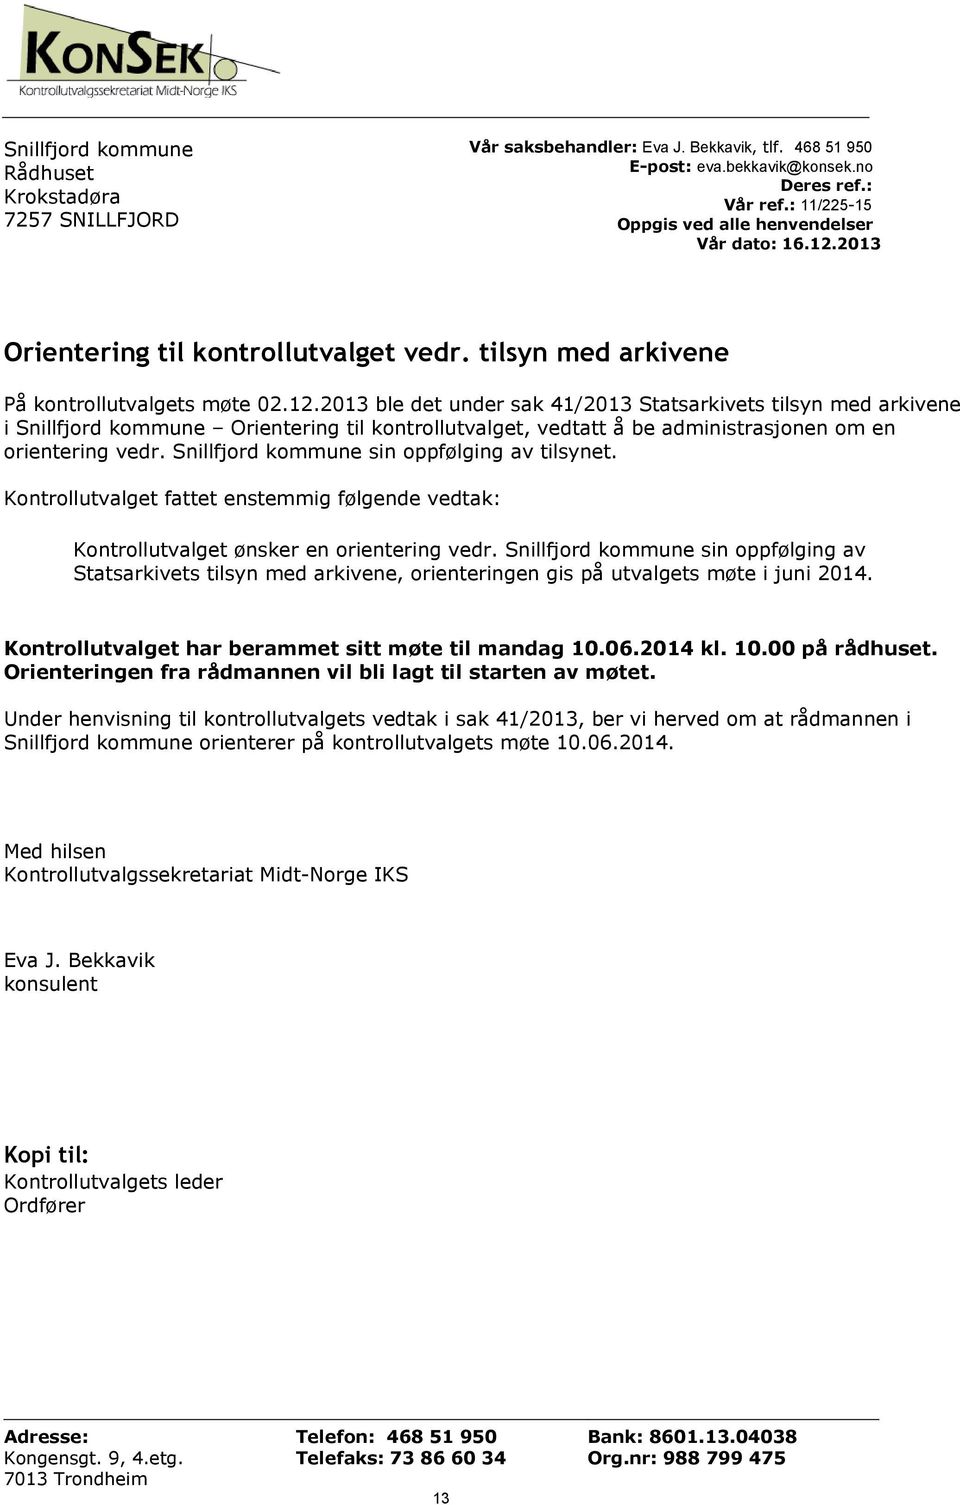 2013 ble det under sak 41/2013 Statsarkivets tilsyn med arkivene i Snillfjord kommune Orientering til kontrollutvalget, vedtatt å be administrasjonen om en orientering vedr.